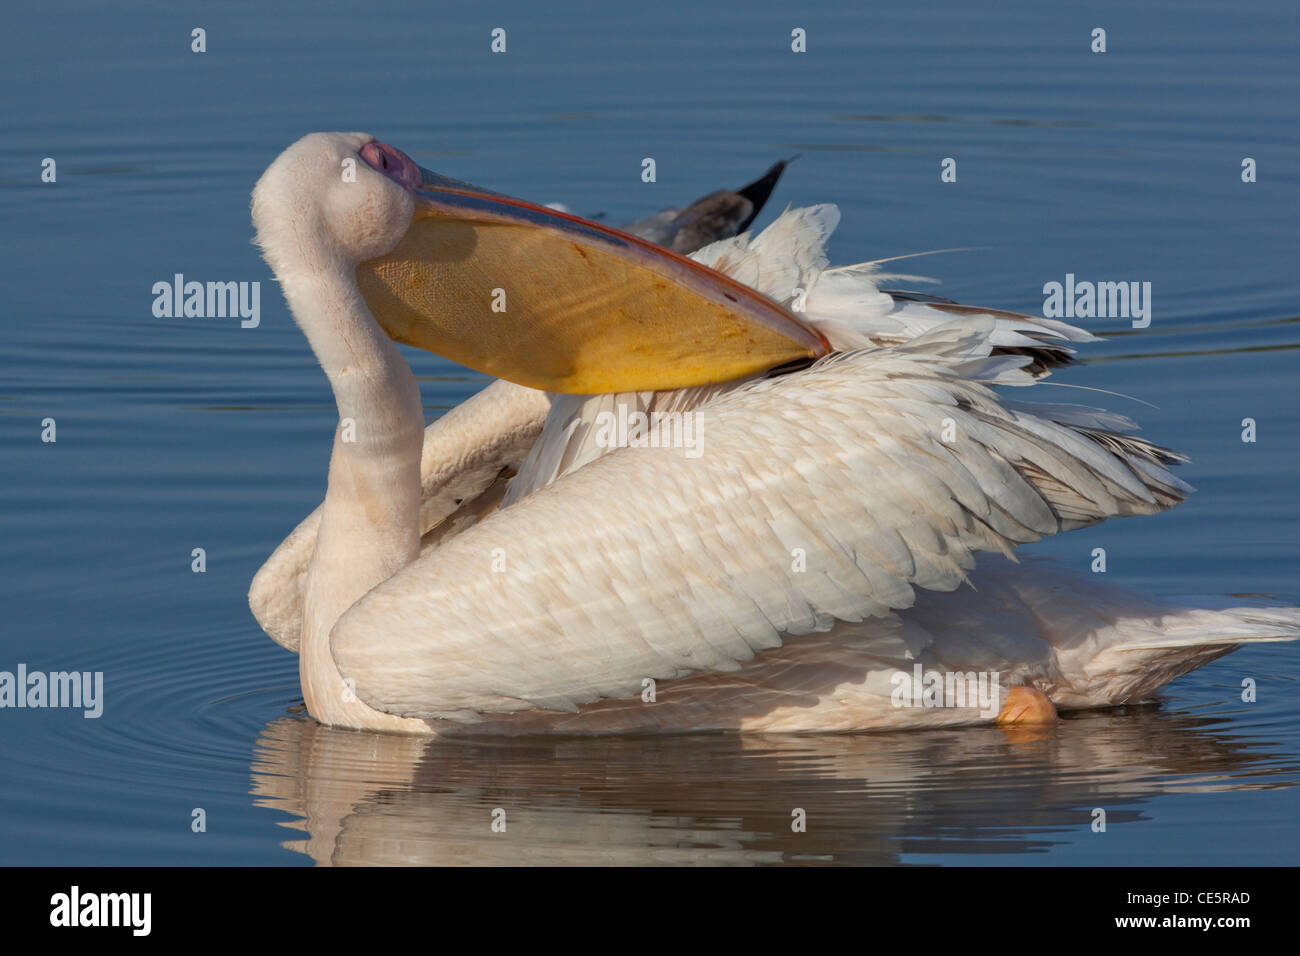 Pellicano bianco (Pelecanus onocrotalus). Preening durante il nuoto, raggiungendo per preen premistoppa sulla coda. Foto Stock